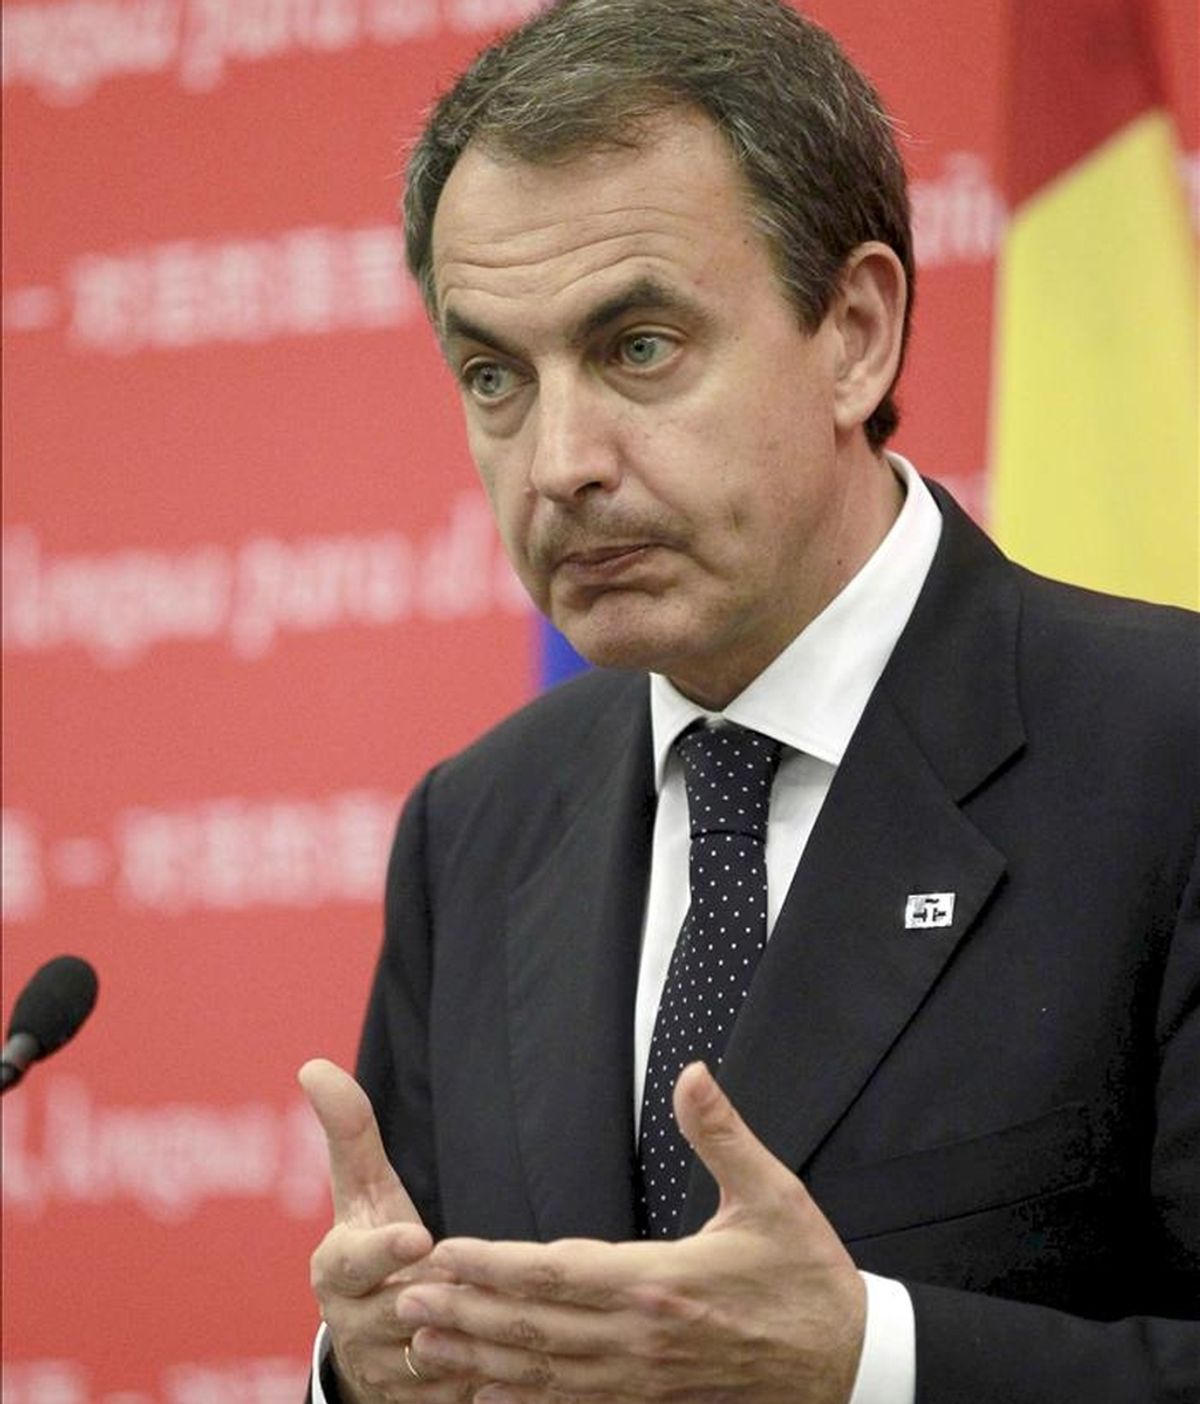 El presidente del Gobierno español, José Luis Rodríguez Zapatero, que se encuentra en Pekín dentro de su cuarto viaje a China, durante su intervención en un acto cultural en defensa del español celebrado en la sede del Instituto Cervantes. EFE